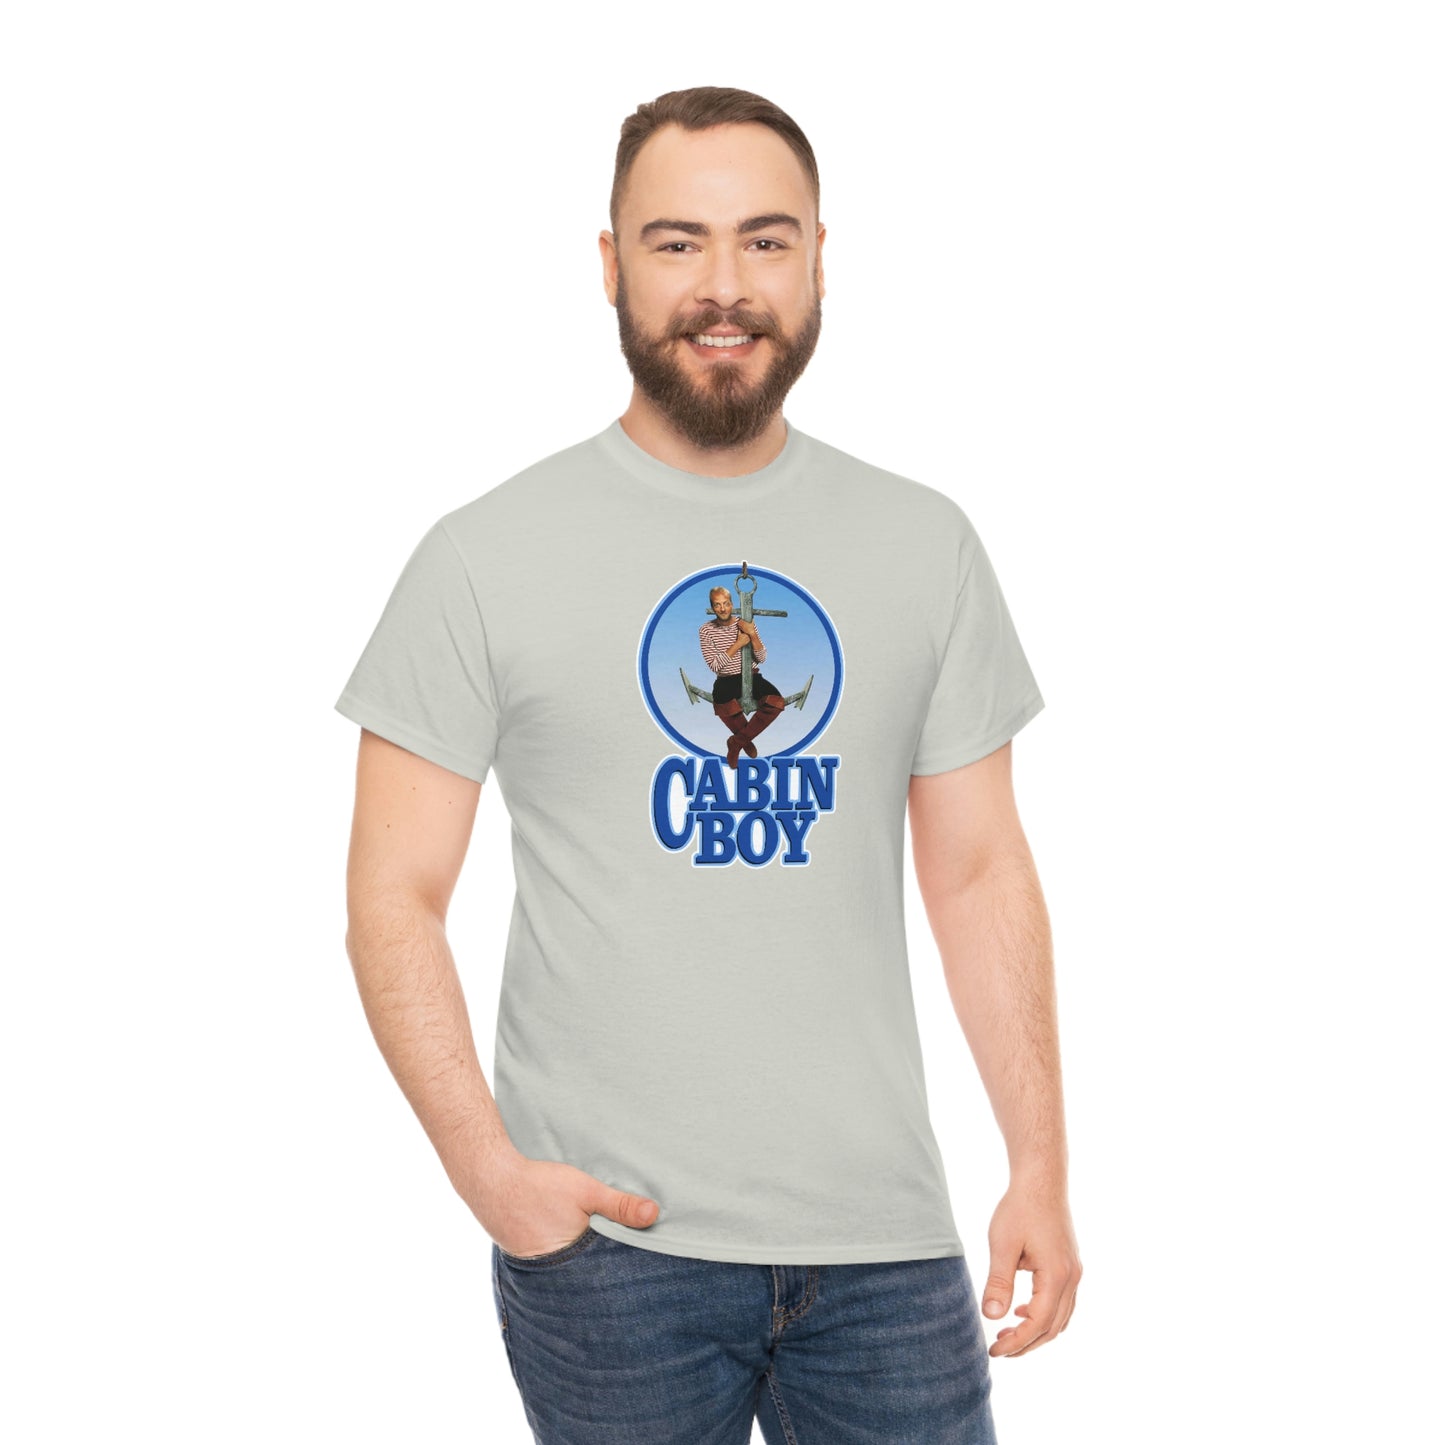 Cabin Boy T-Shirt